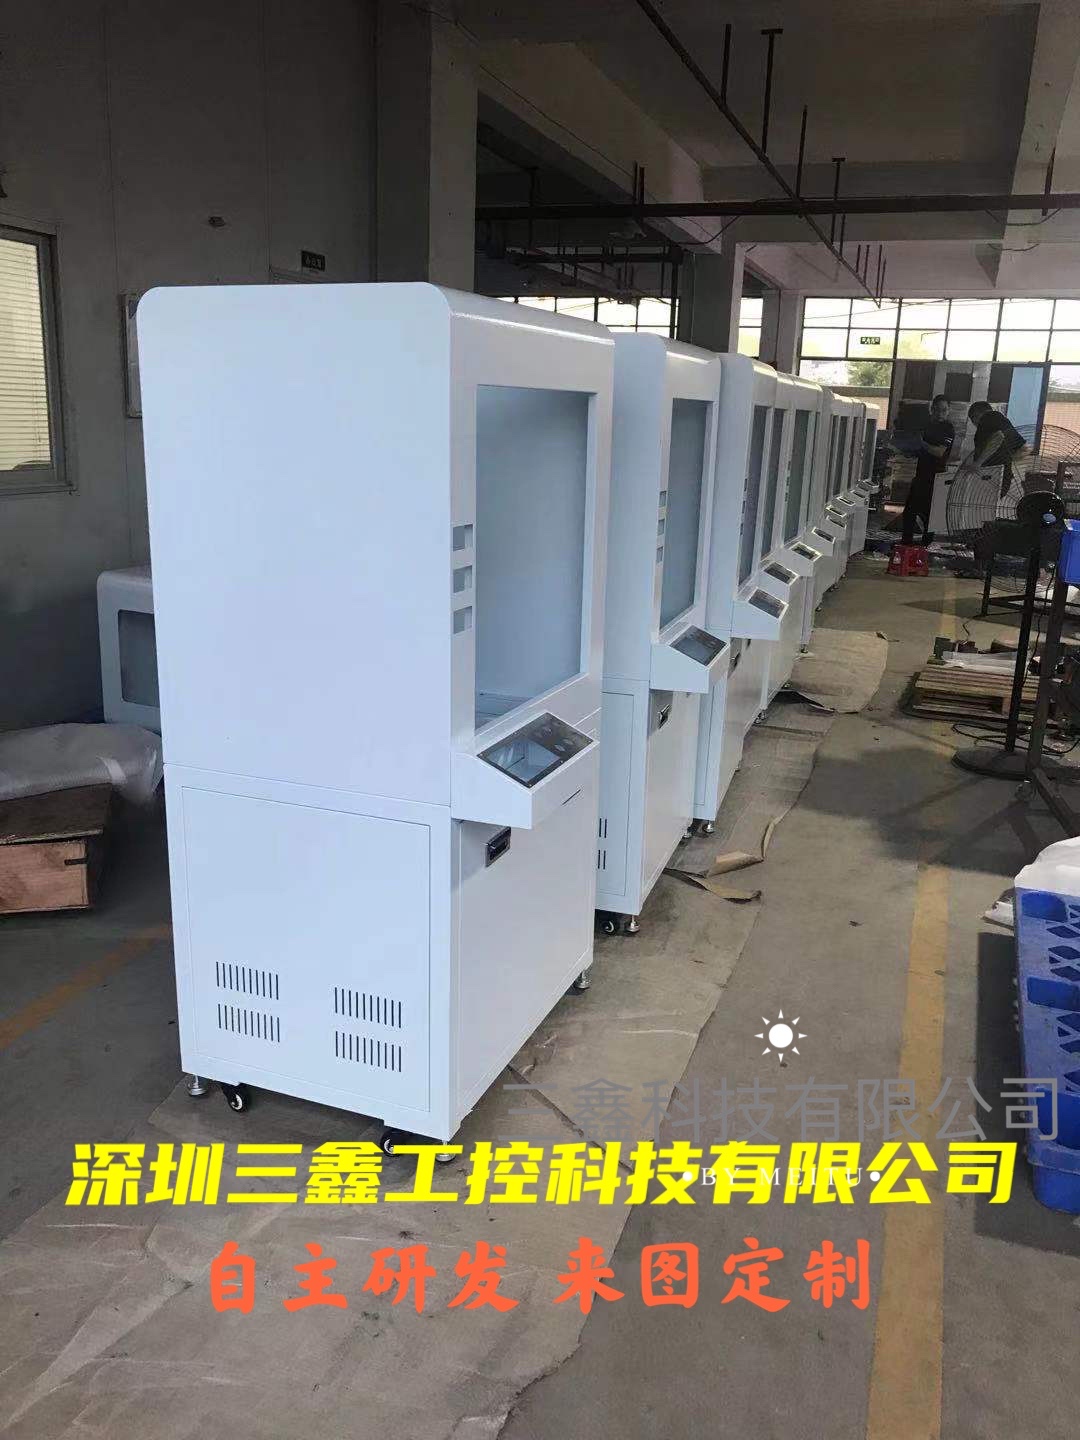 自动化机柜，机柜，深圳三鑫工控机柜，设备机柜，自动化机箱机柜